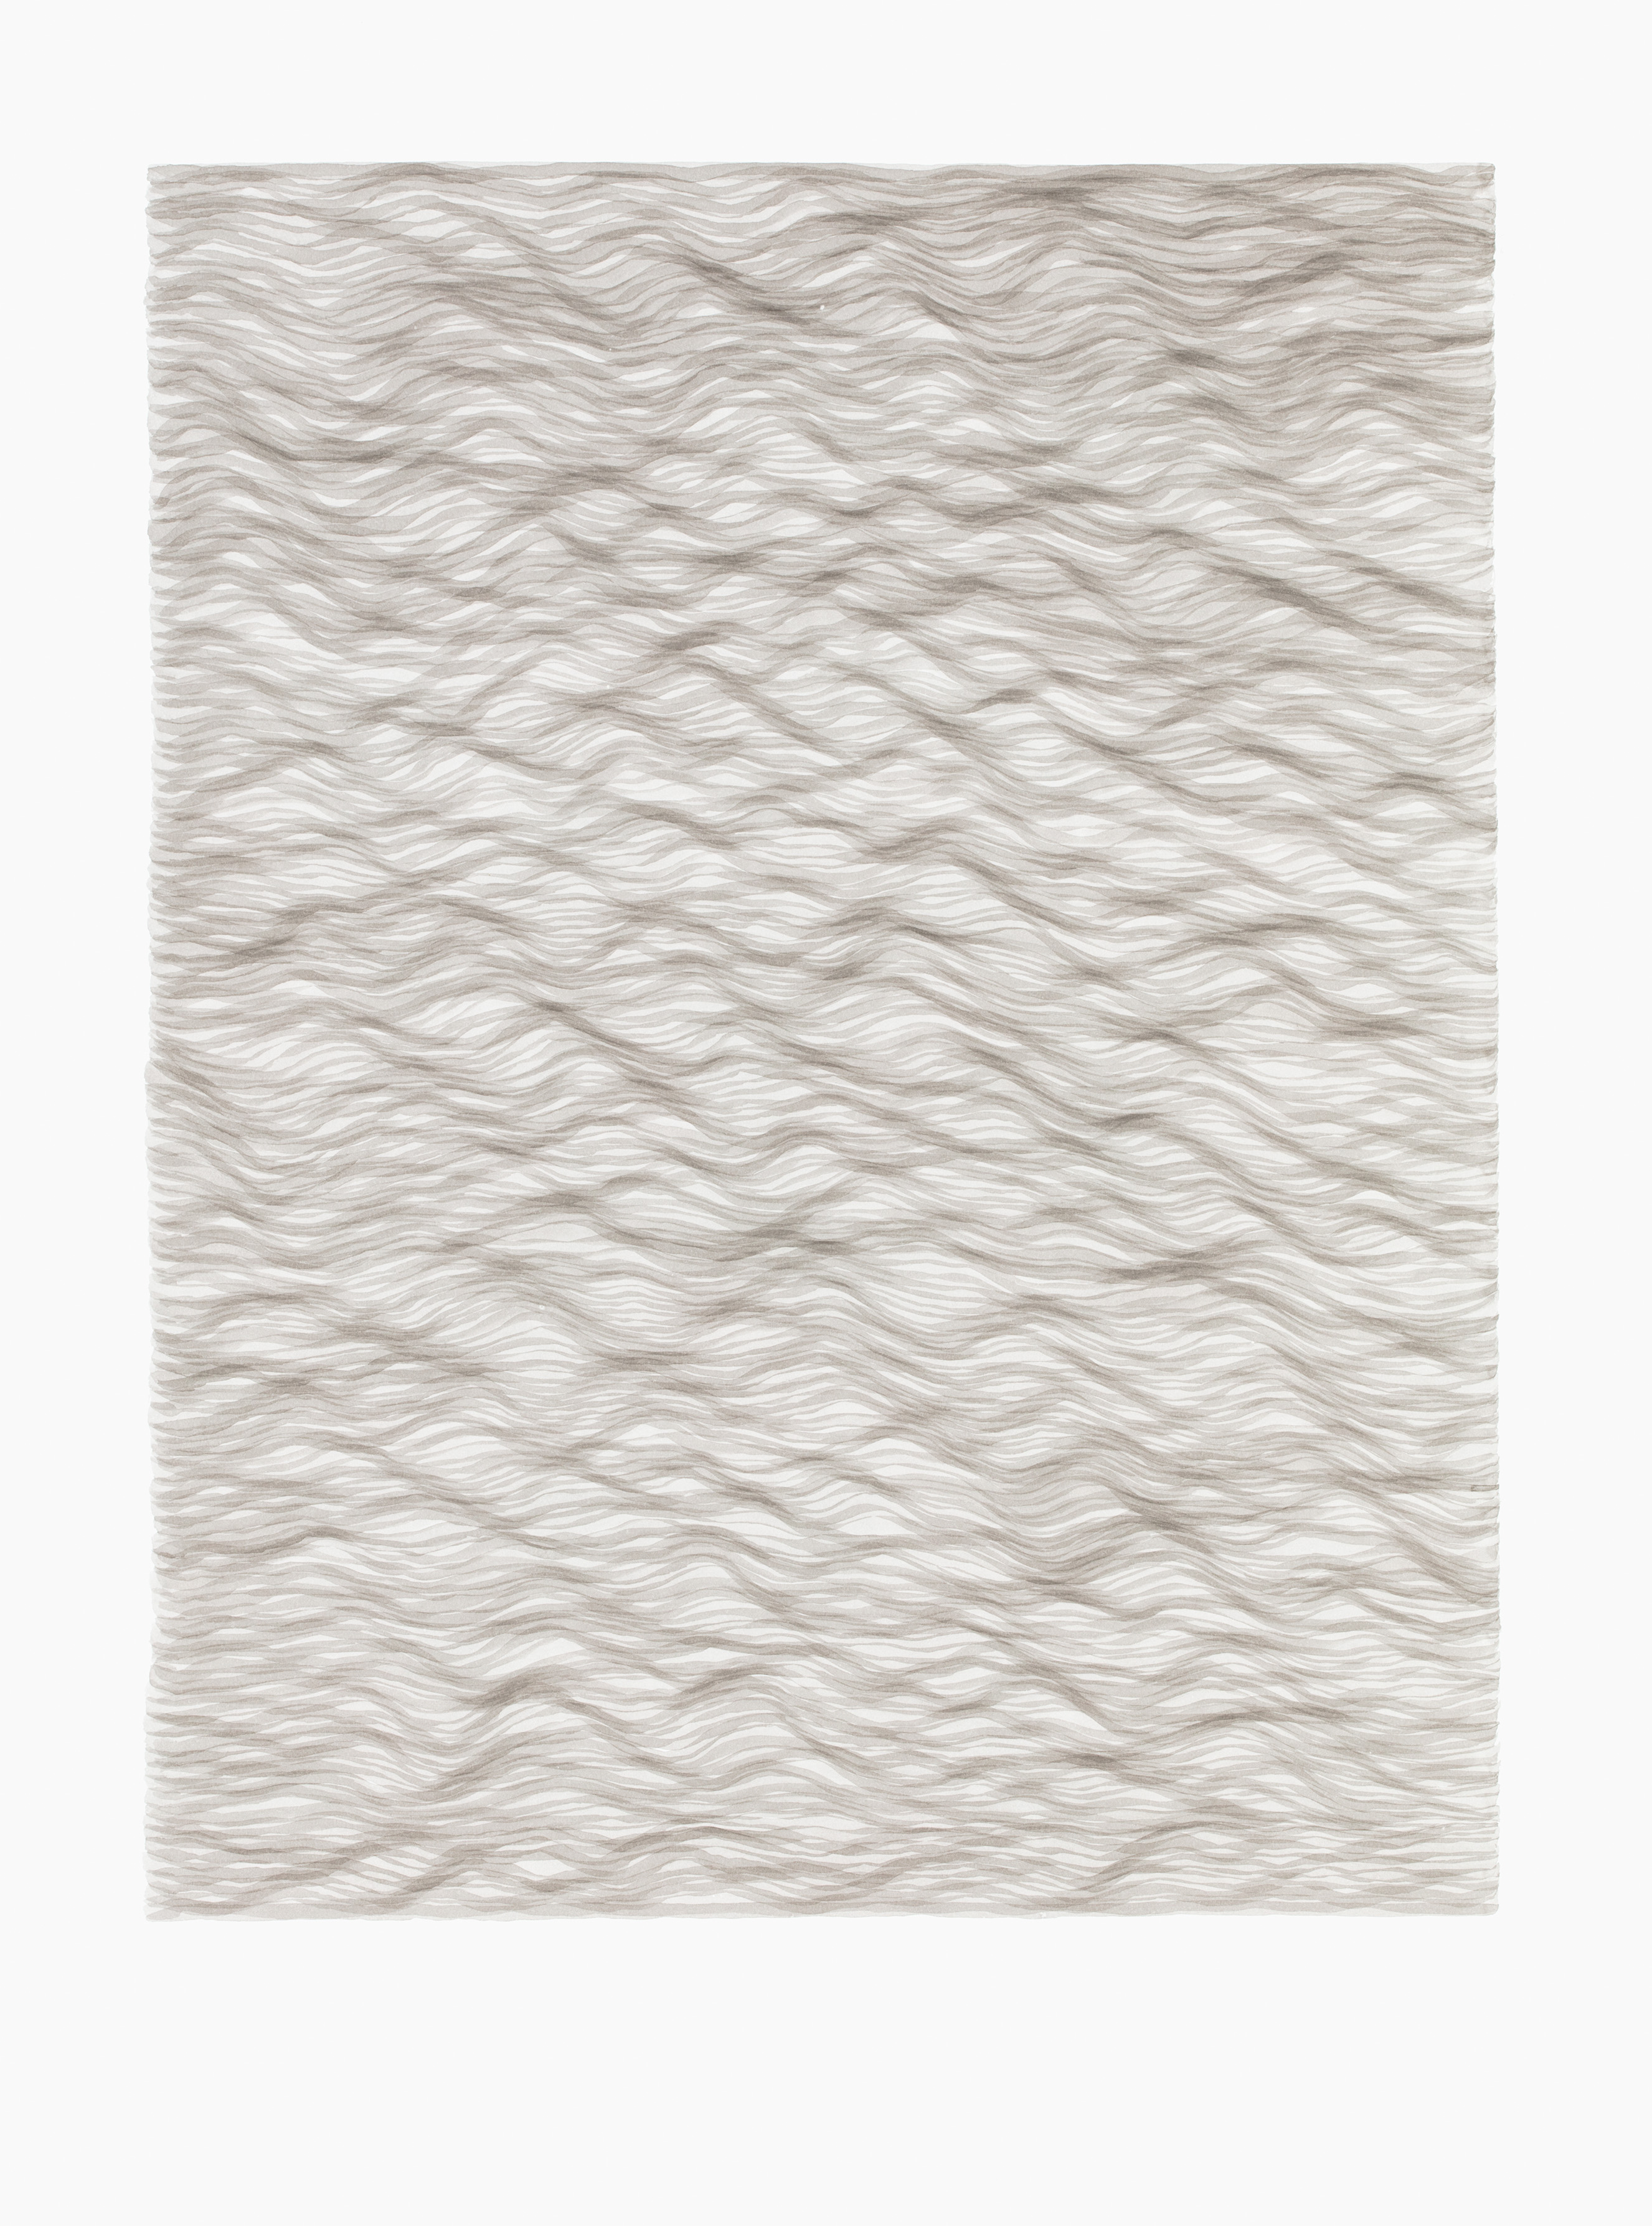 LUISE VON ROHDEN Wellen (hh h/wu 150/0), 2018, Tusche auf Papier, 78 x 58 cm, Foto: Thomas Bruns